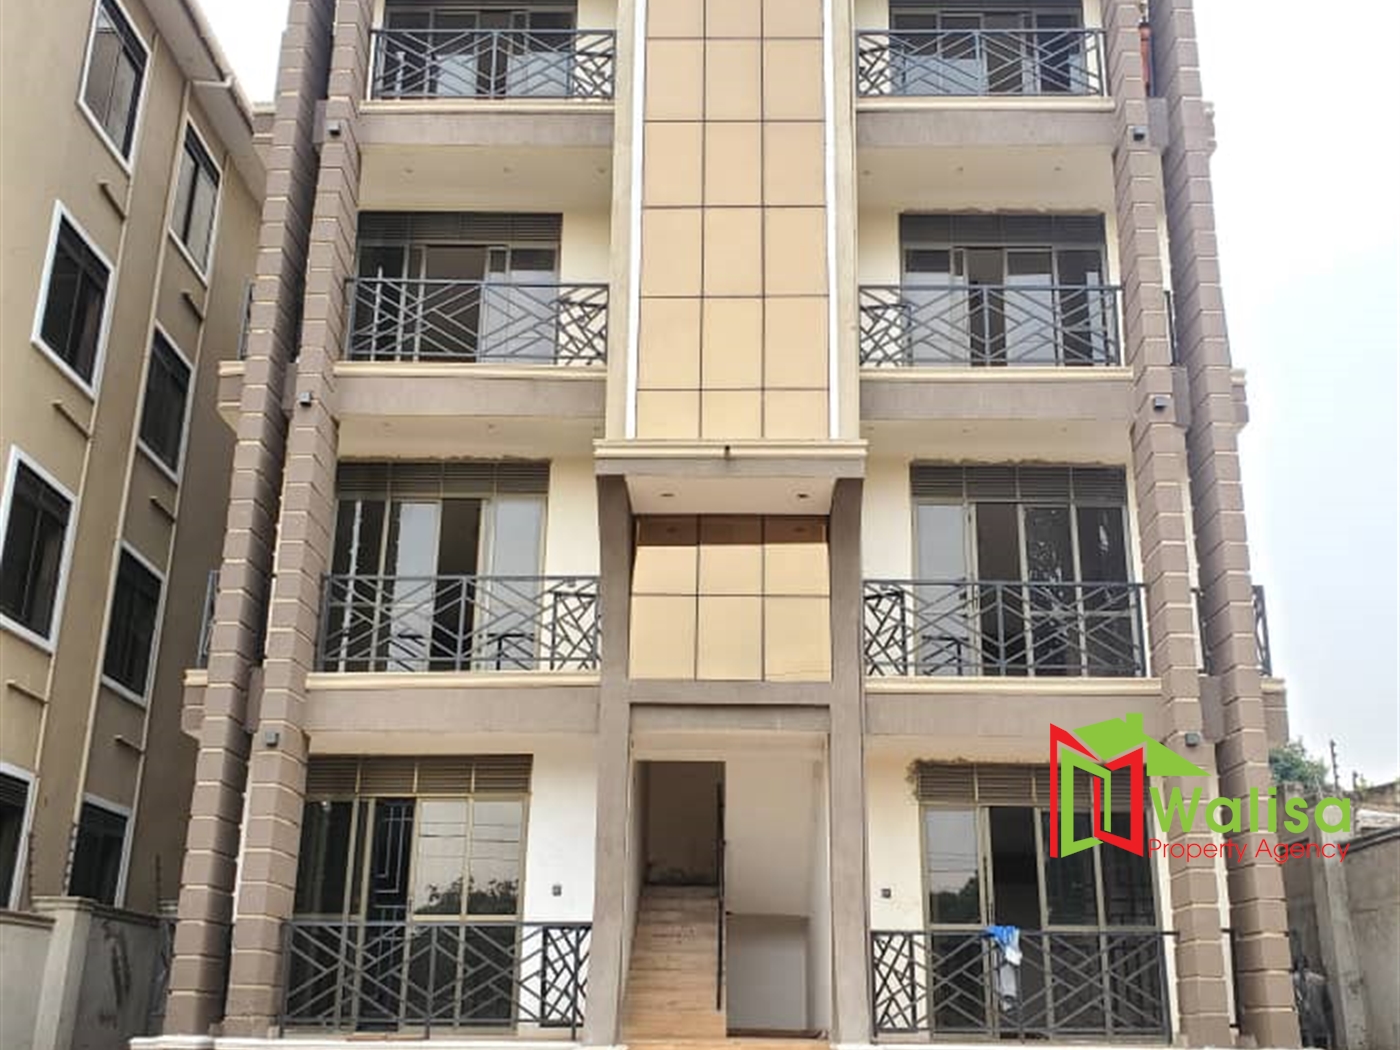 Apartment block for sale in Kyanja Kampala